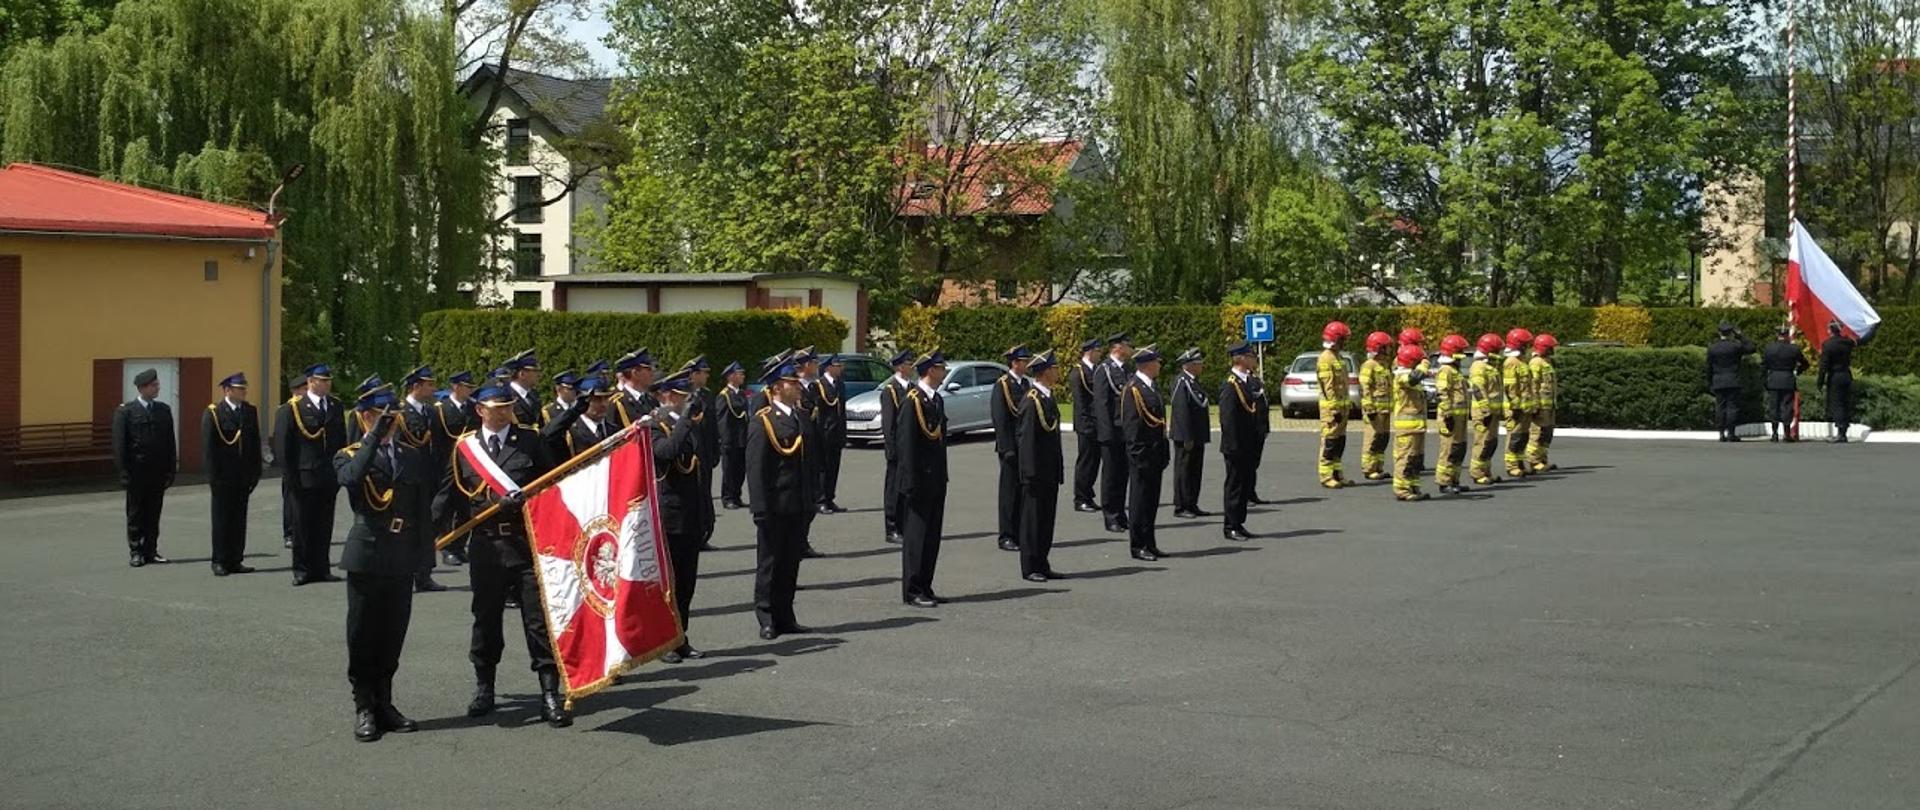 Na zdjęciu strażacy PSP w mundurach wyjściowych, na początku po lewej stronie poczet sztandarowy pochyla sztandar, dalej strażacy w mundurach specjalnych i czerwonych hełmach, na samym końcu poczet flagowy wciąga flagę państwową.